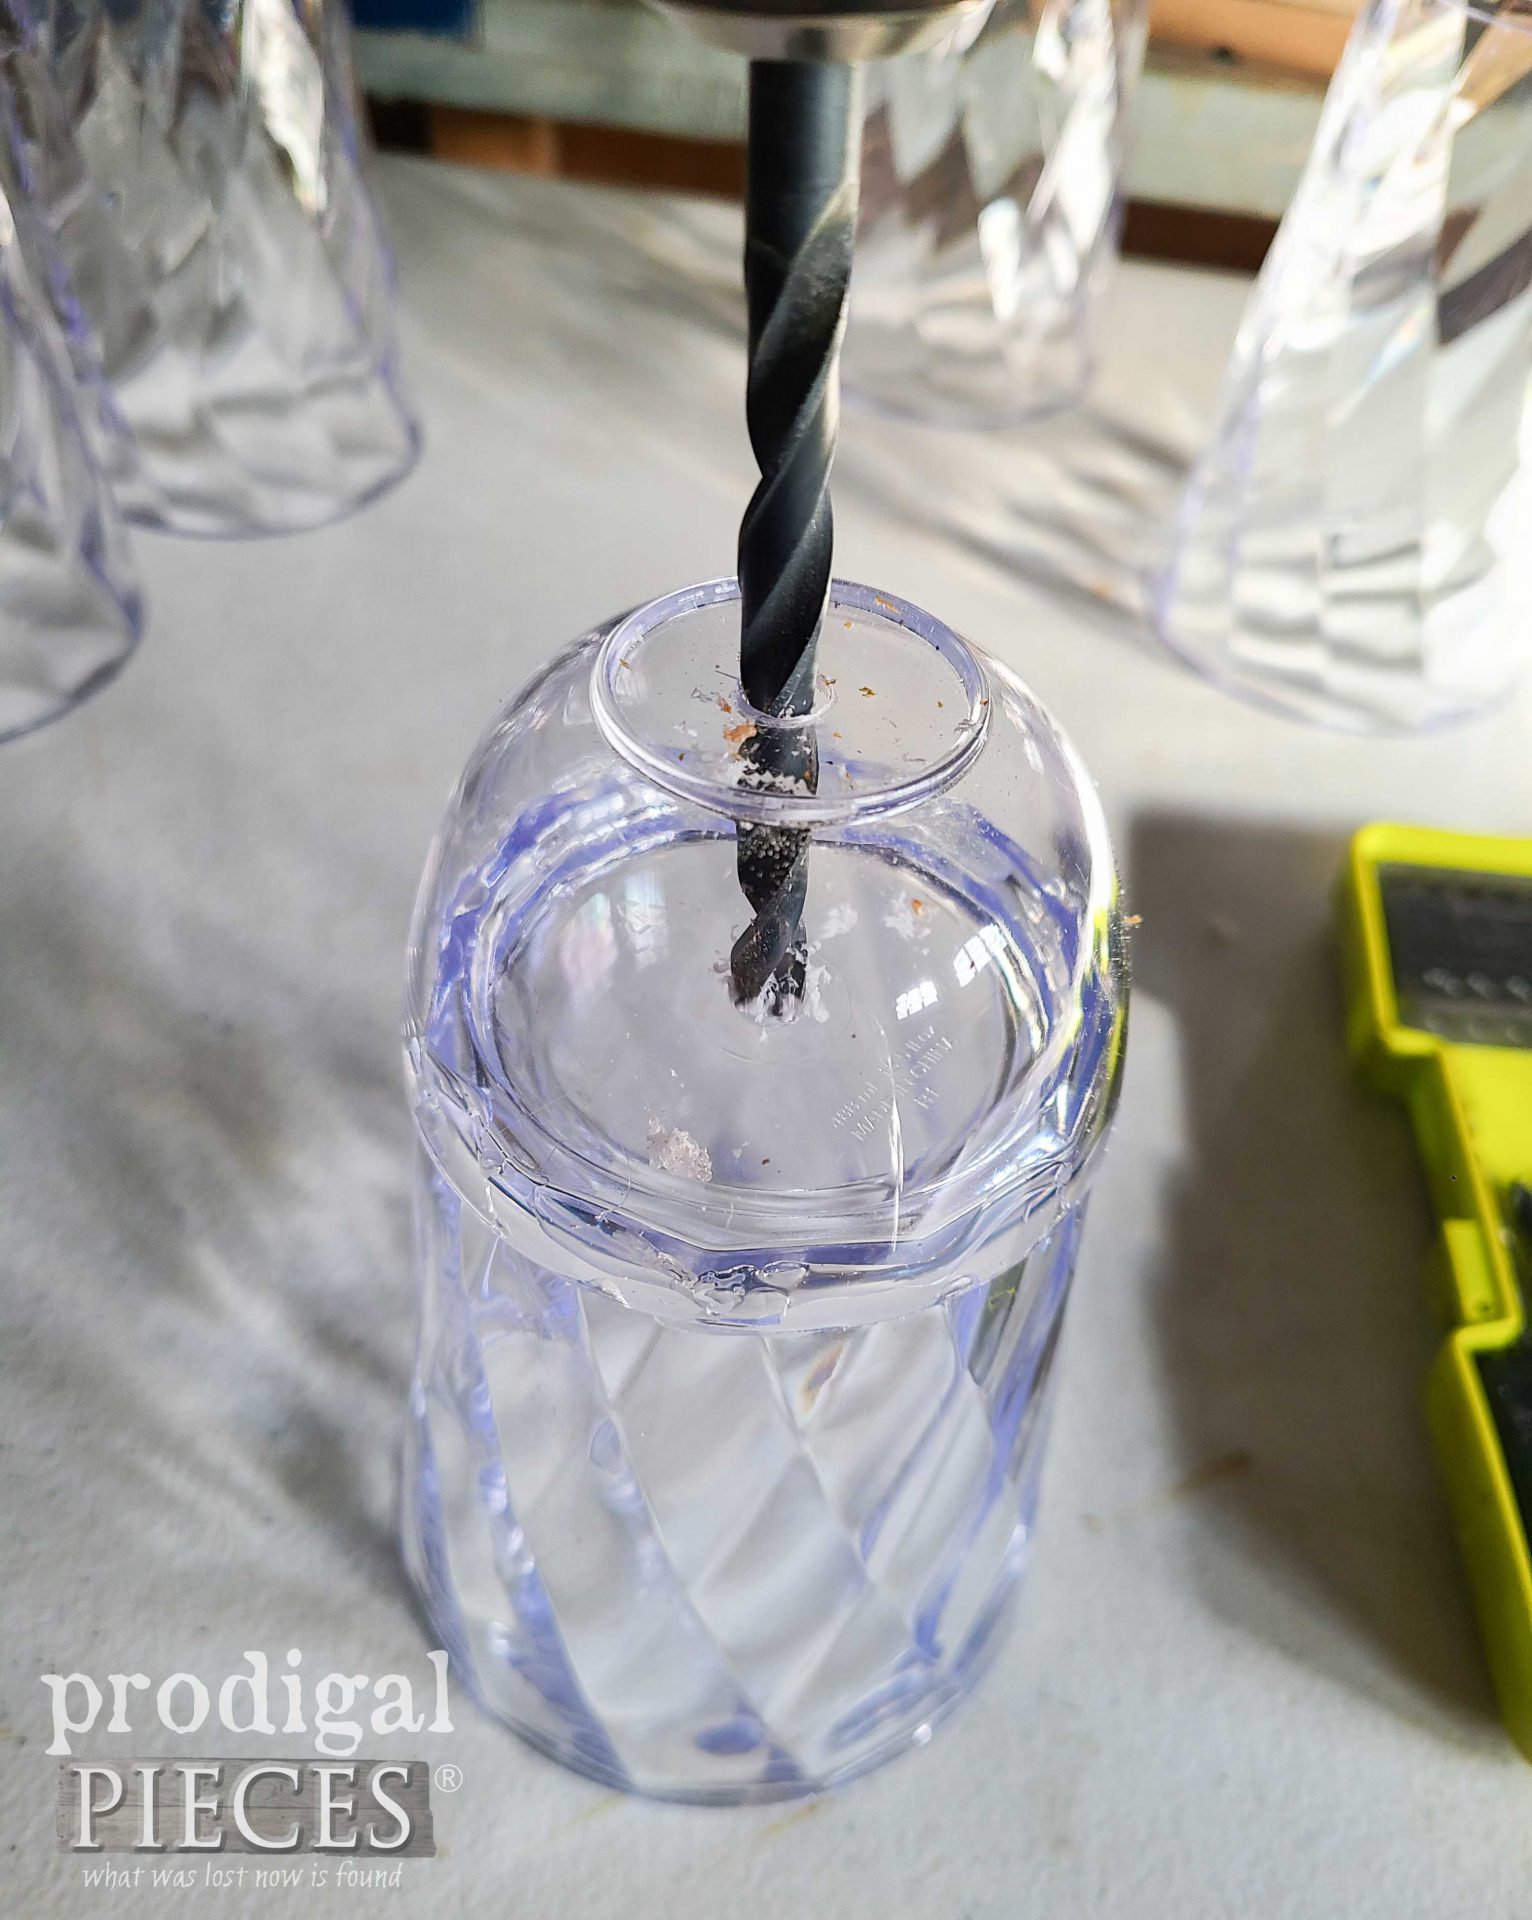 Drilling Cups Turned DIY Zinc Bells | prodigalpieces.com